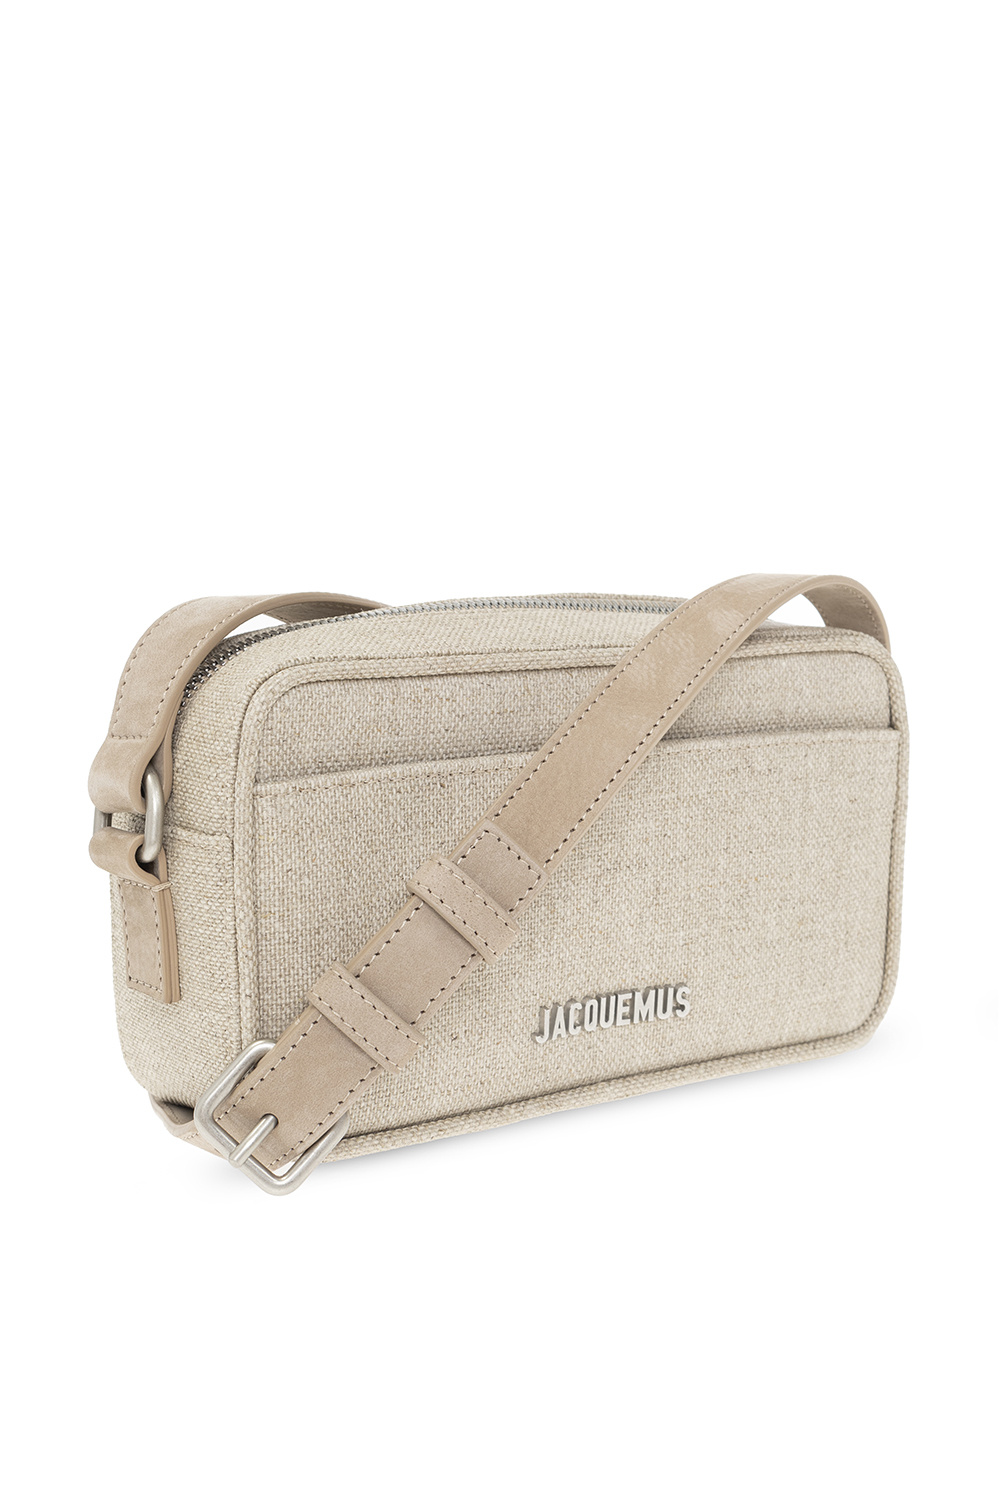 Jacquemus ‘Le Baneto’ shoulder westwood bag